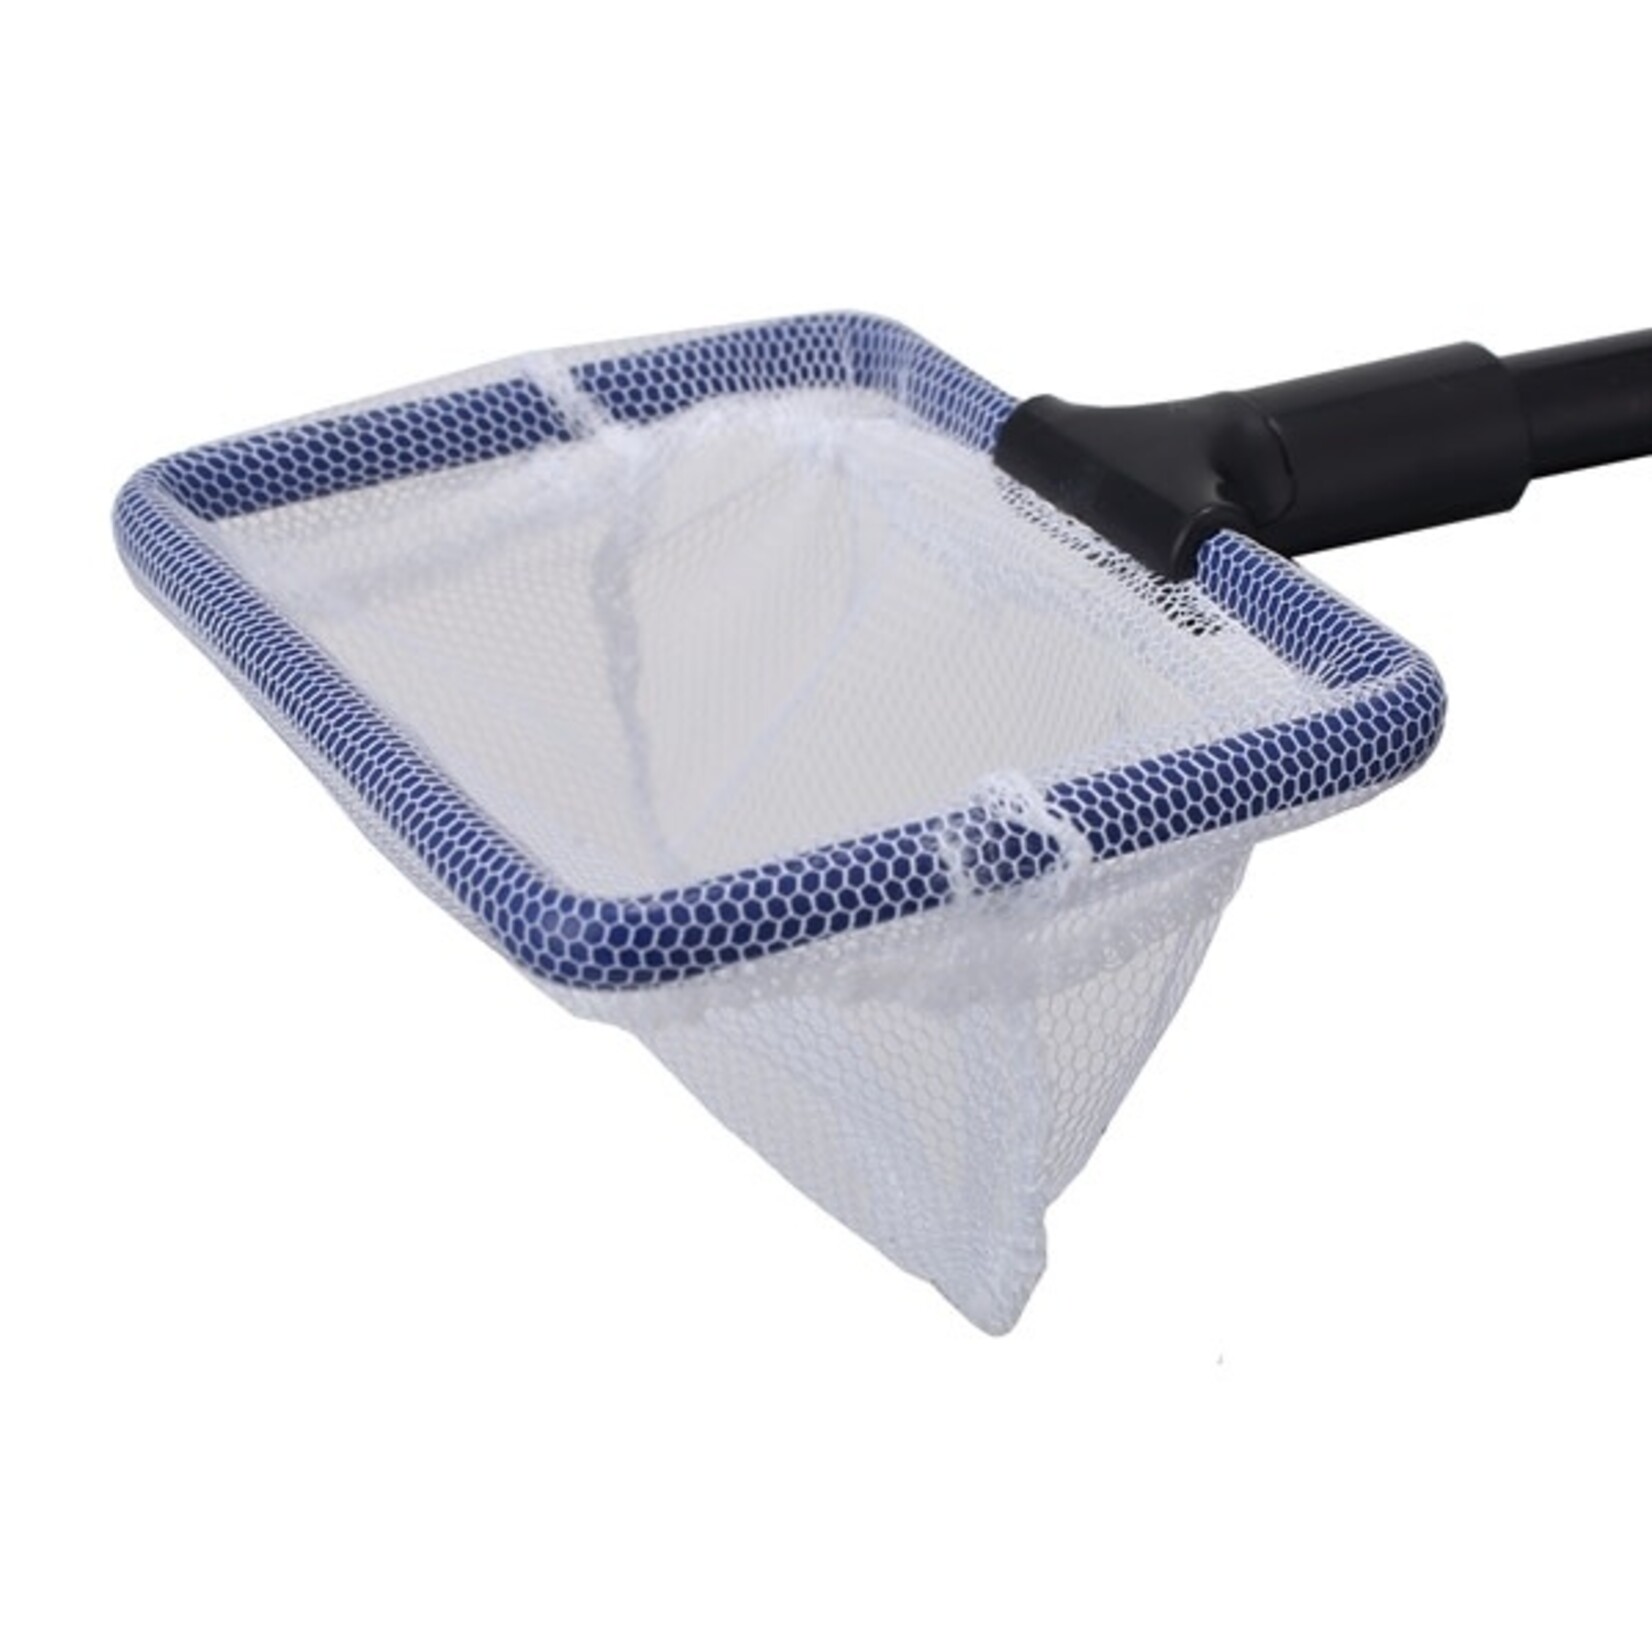 HS Aqua Cleaning kit